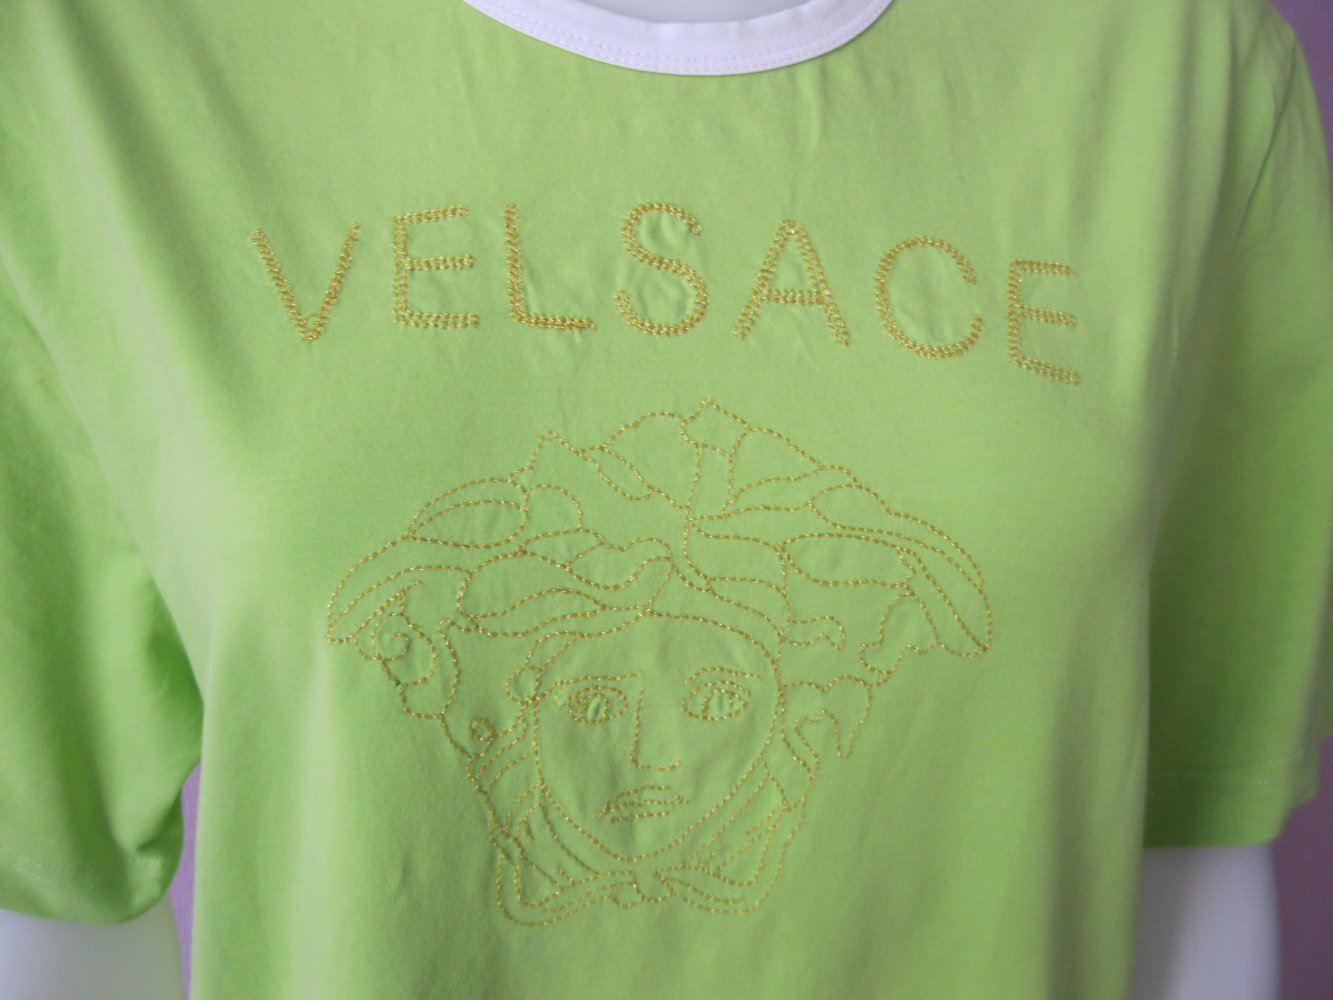 Velsace Sport T-Shirt Neongrün Stickerei 48 / 4XL